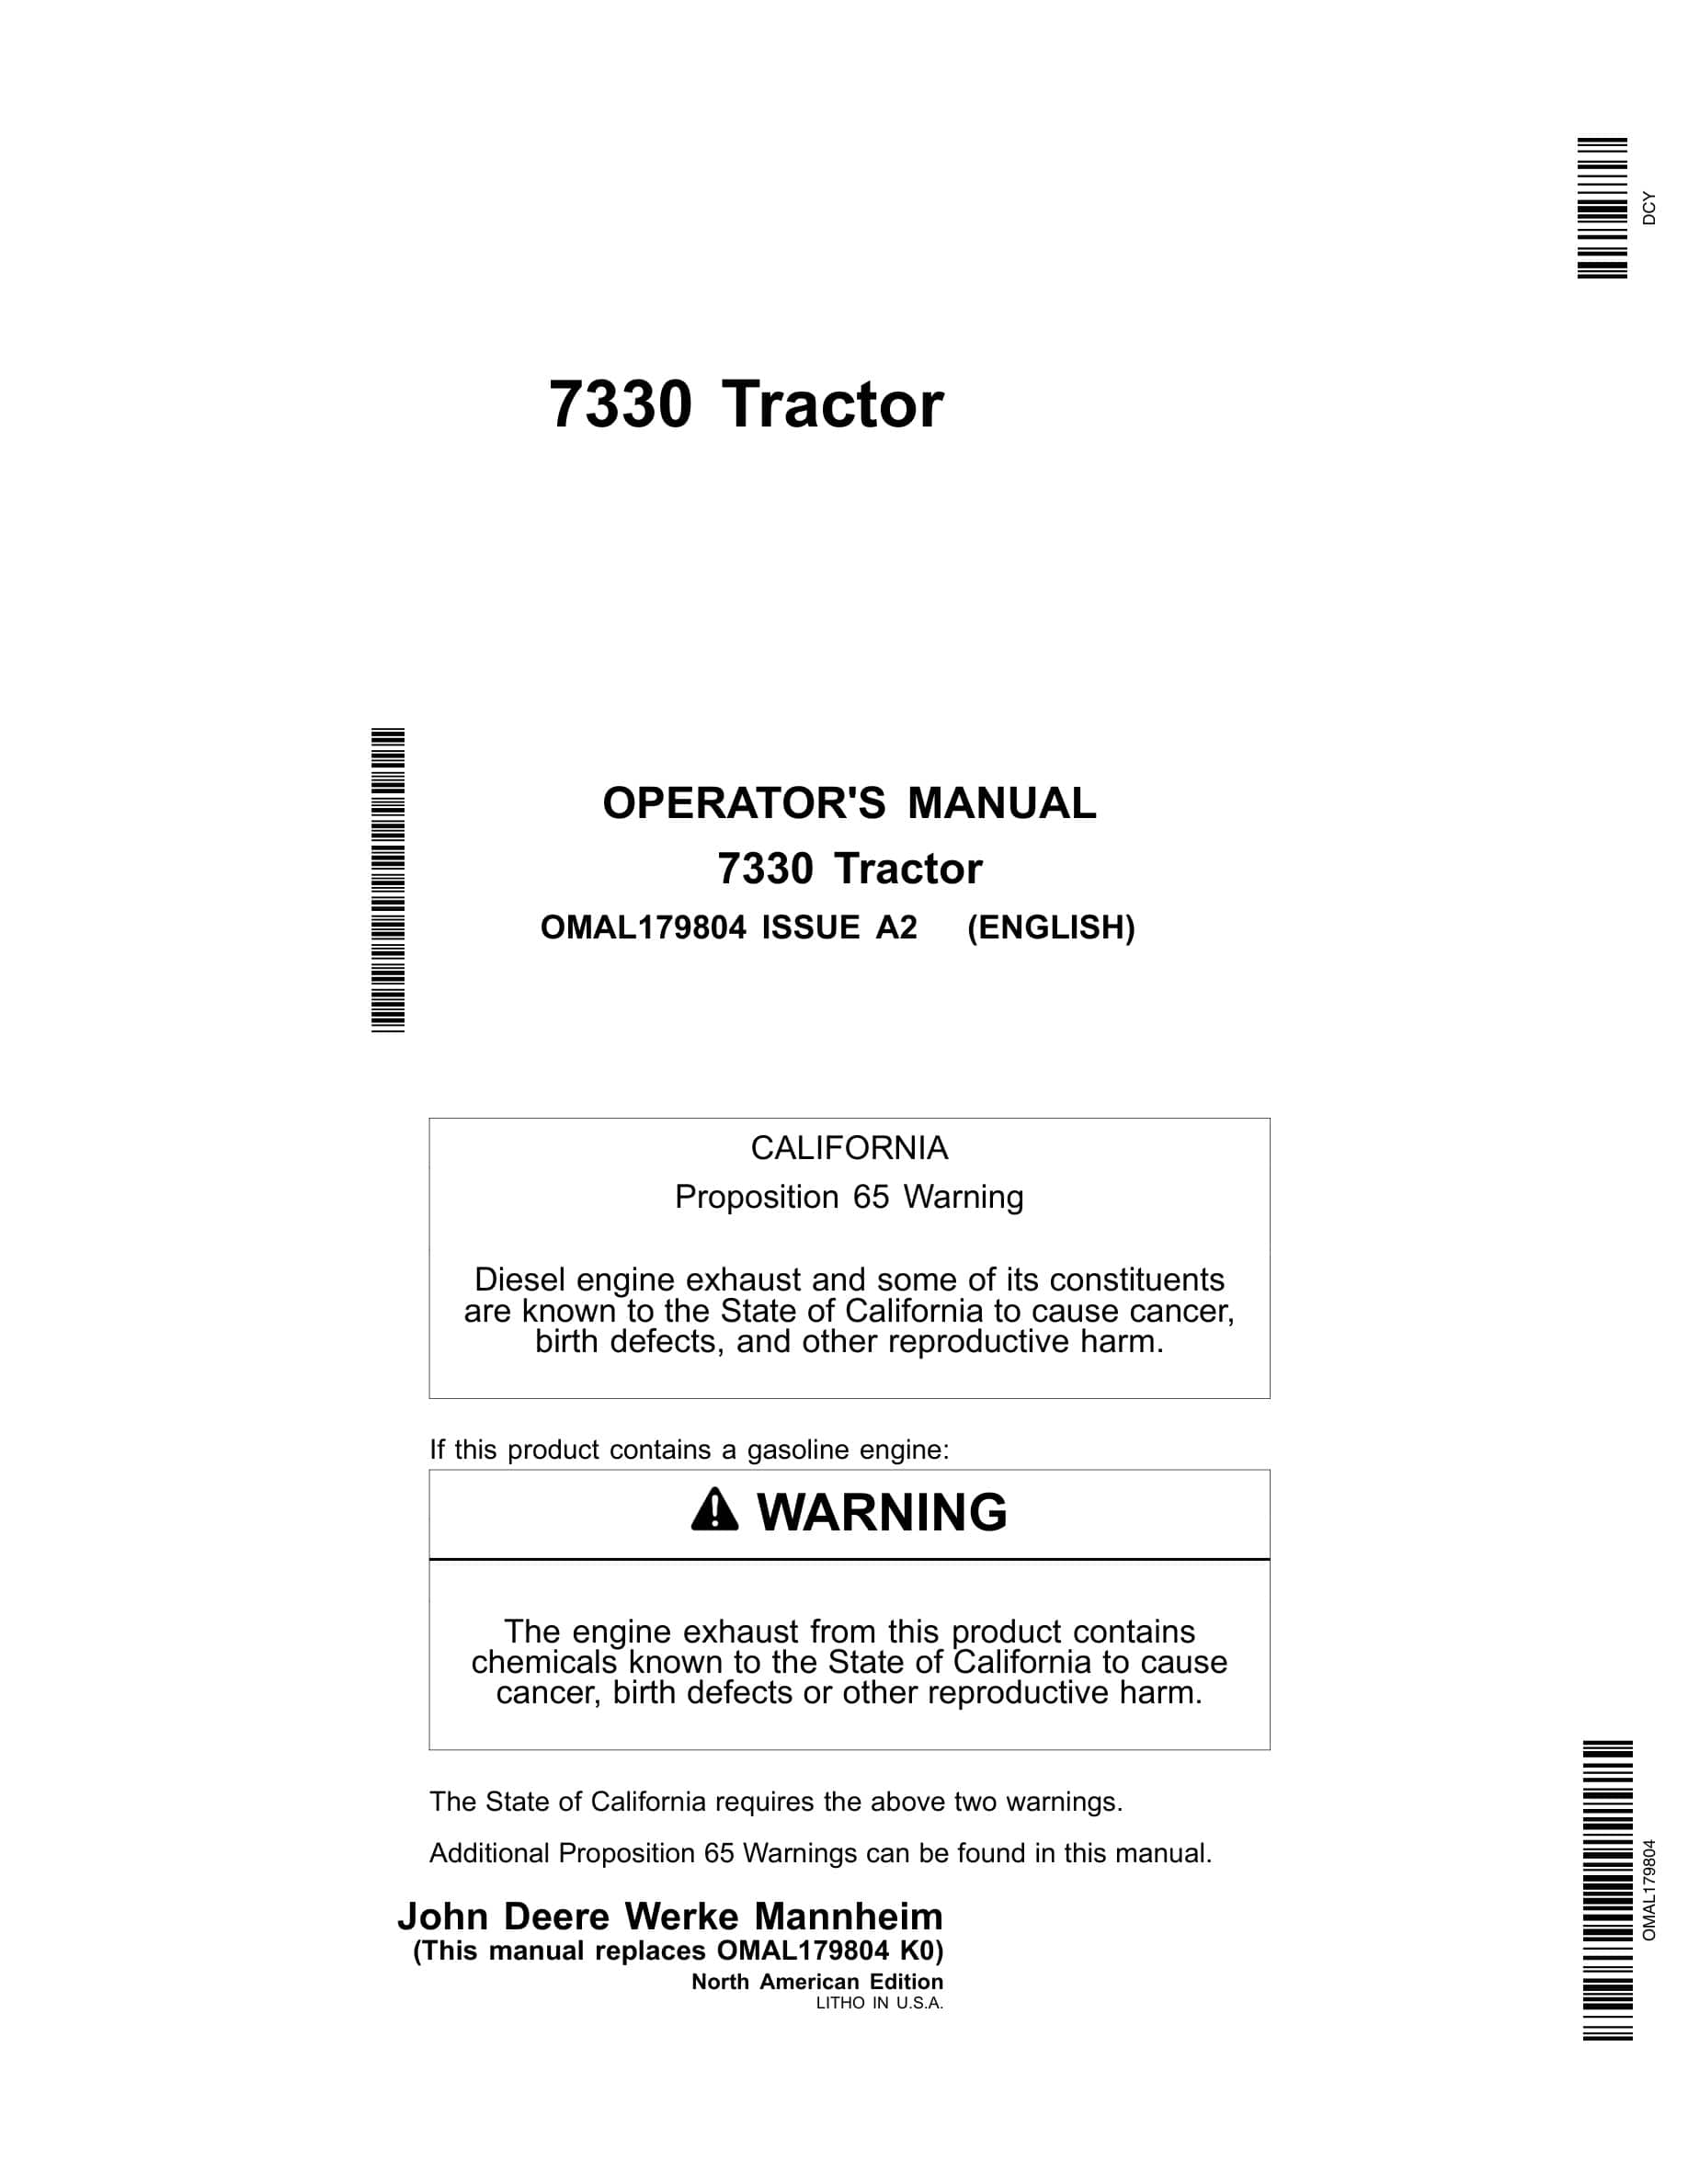 John Deere 7330 Tractor Operator Manual OMAL179804-1